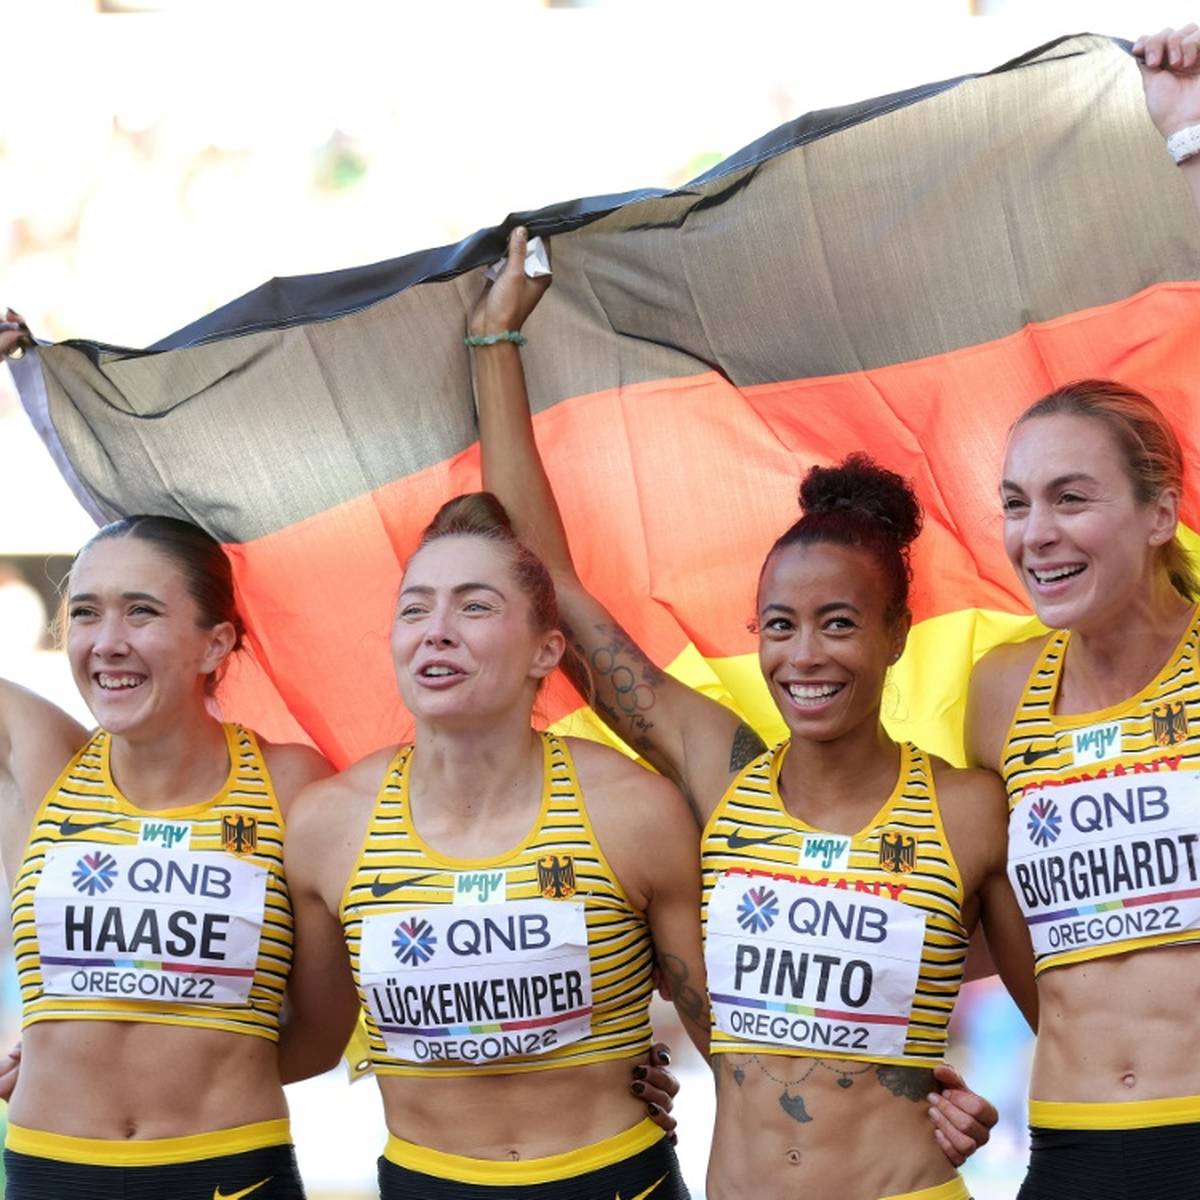 Sprinterin Gina Lückenkemper hat die öffentliche Kritik am deutschen Abschneiden bei der Leichtathletik-WM in Eugene/Oregon scharf kritisiert.